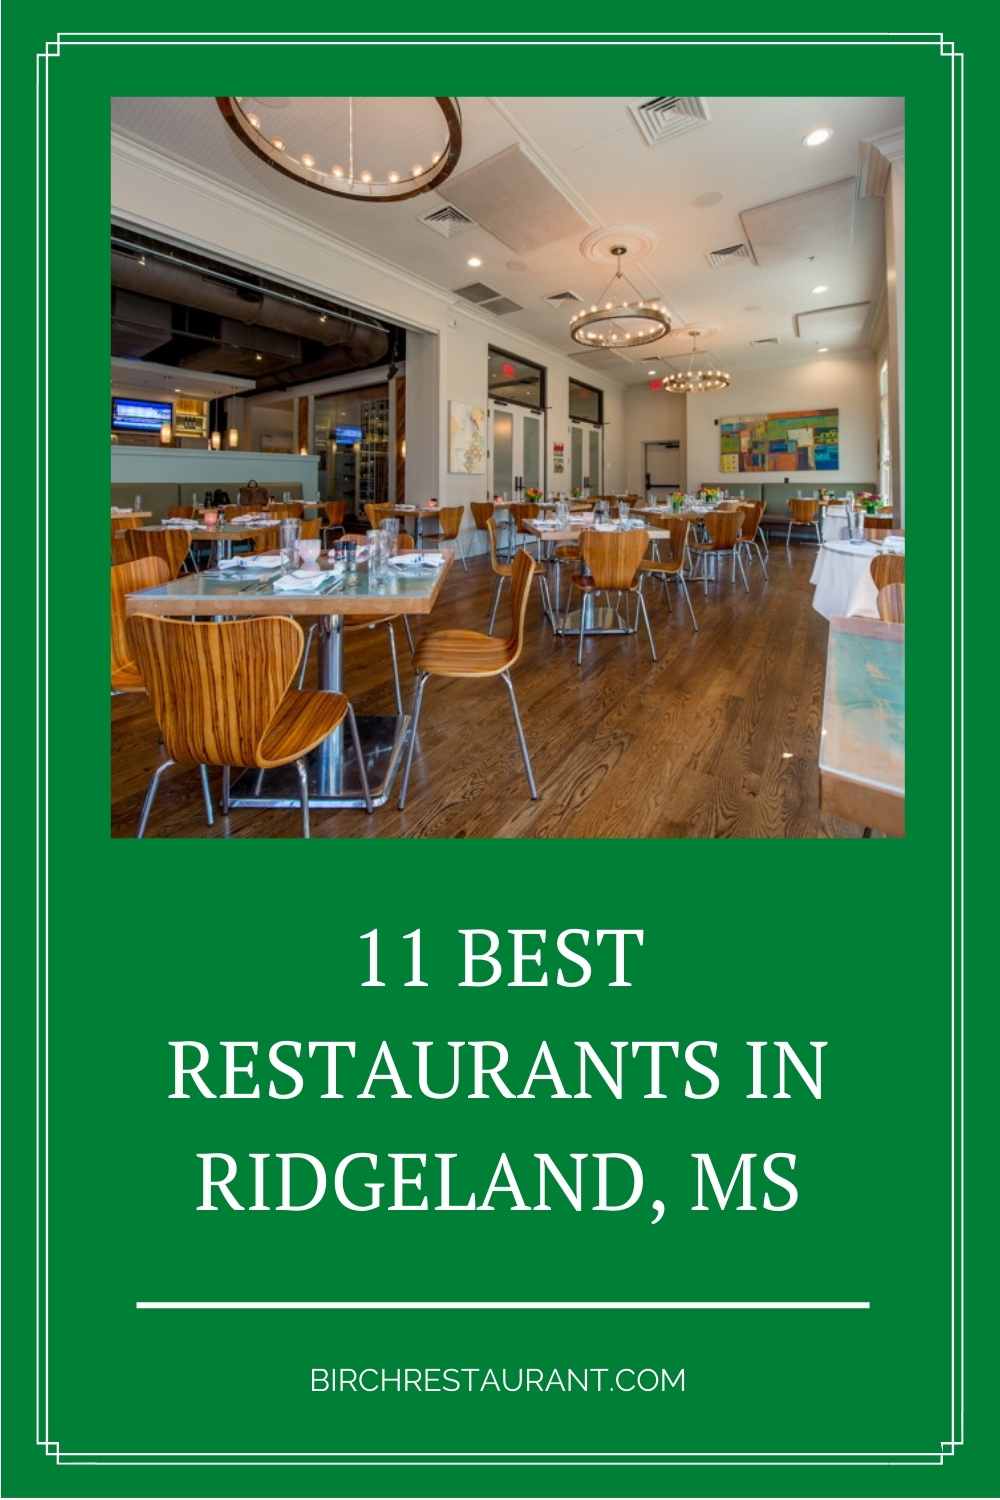 Best Restaurants in Ridgeland, MS